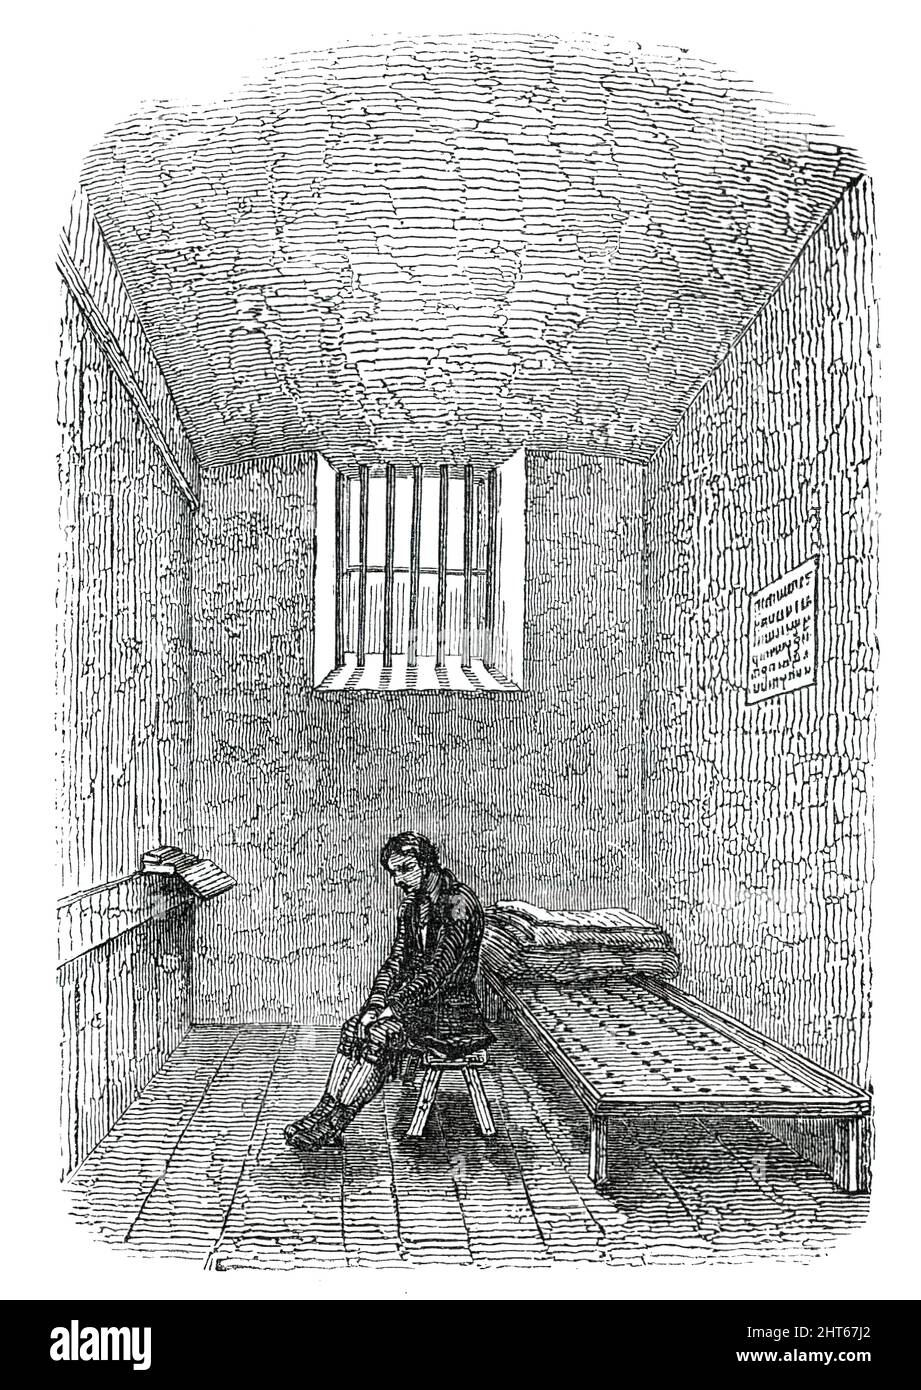 Ньюгейтская тюрьма в 19 веке